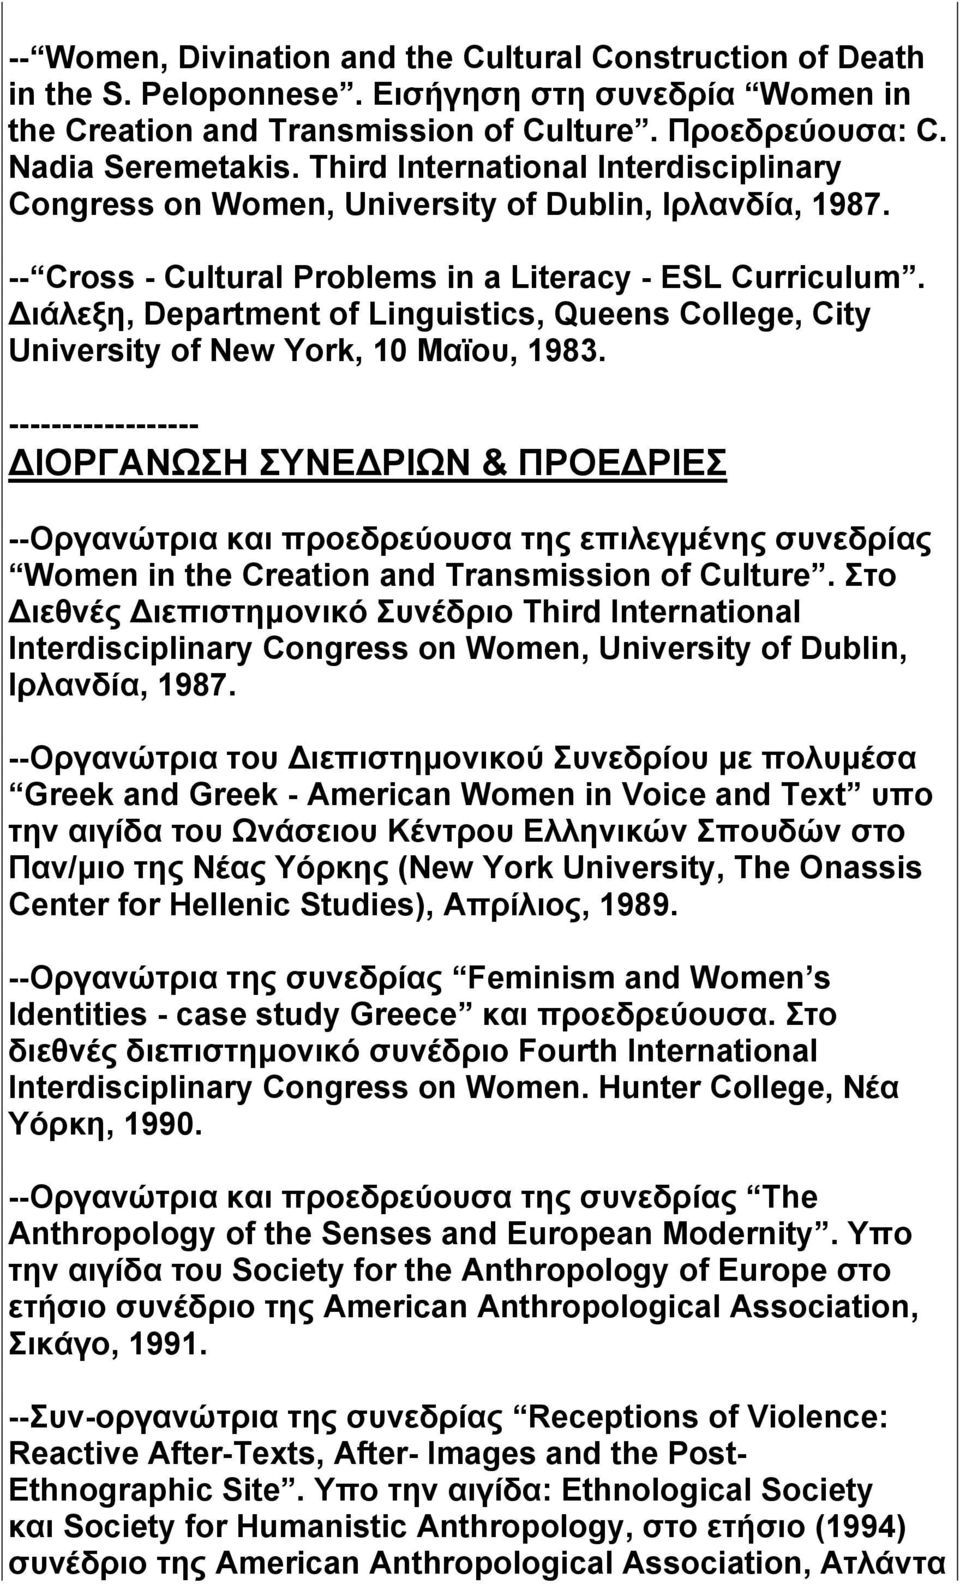 Διάλεξη, Department of Linguistics, Queens College, City University of New York, 10 Mαϊου, 1983.